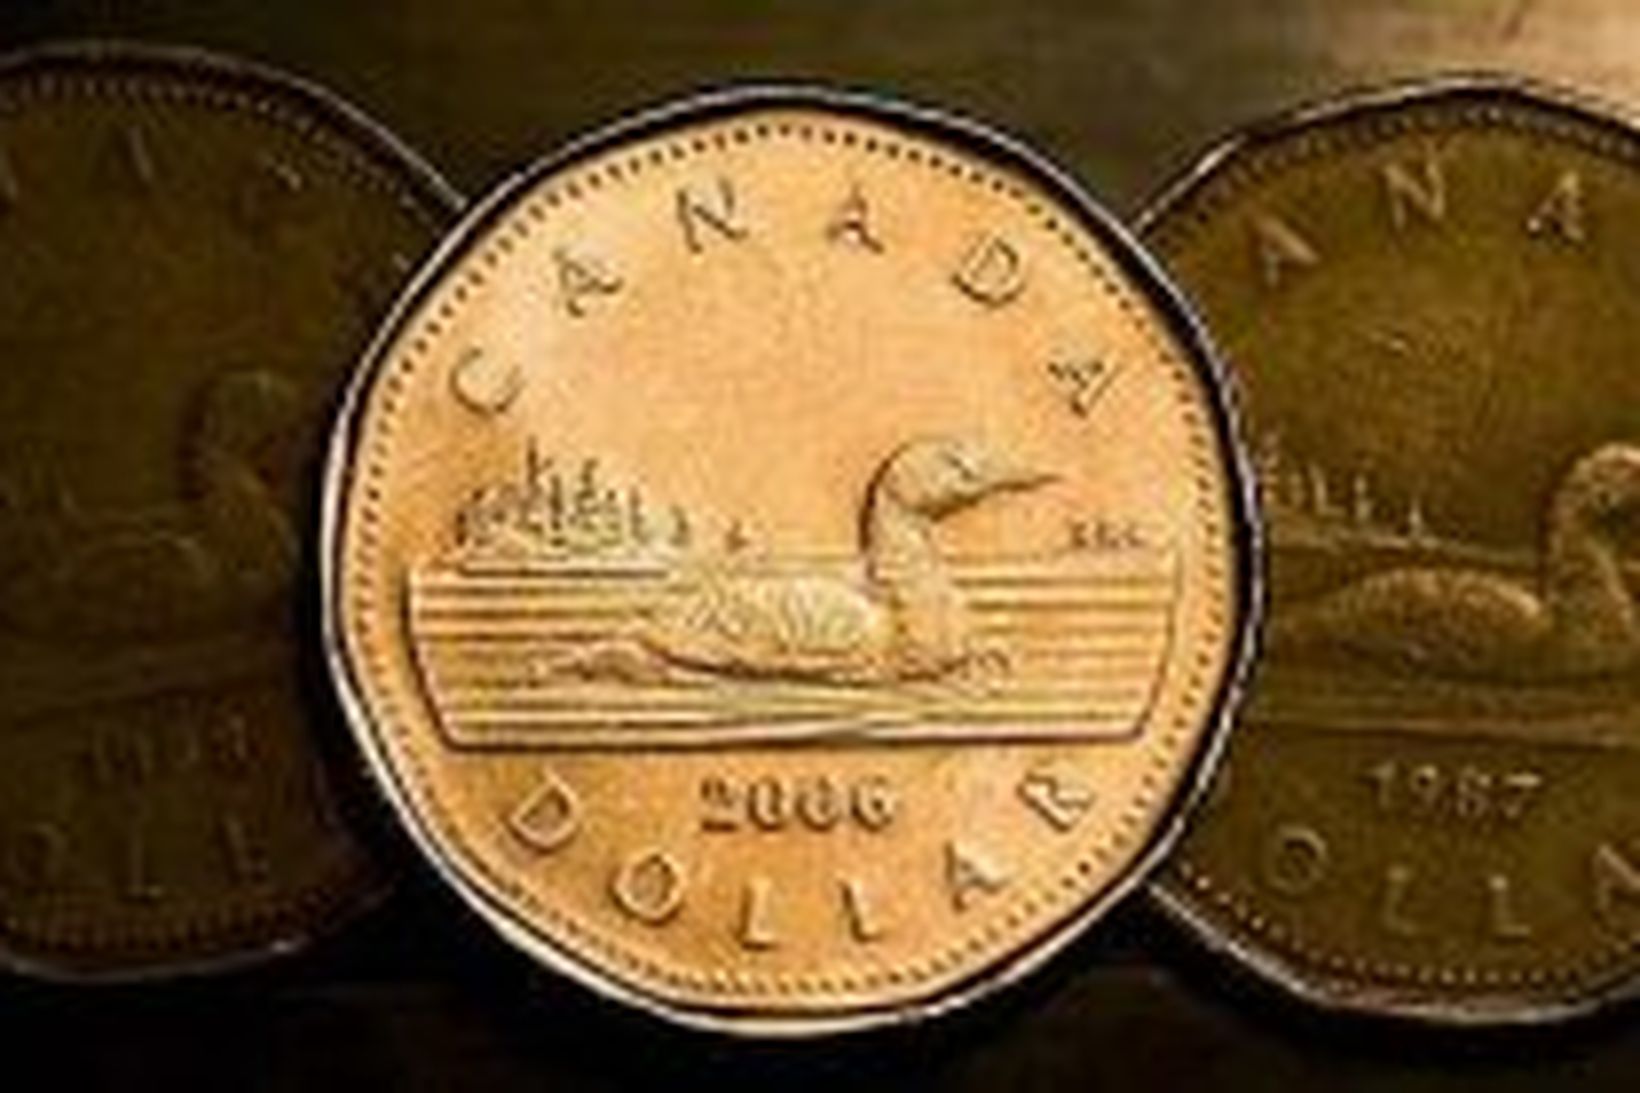 Kanadadollari